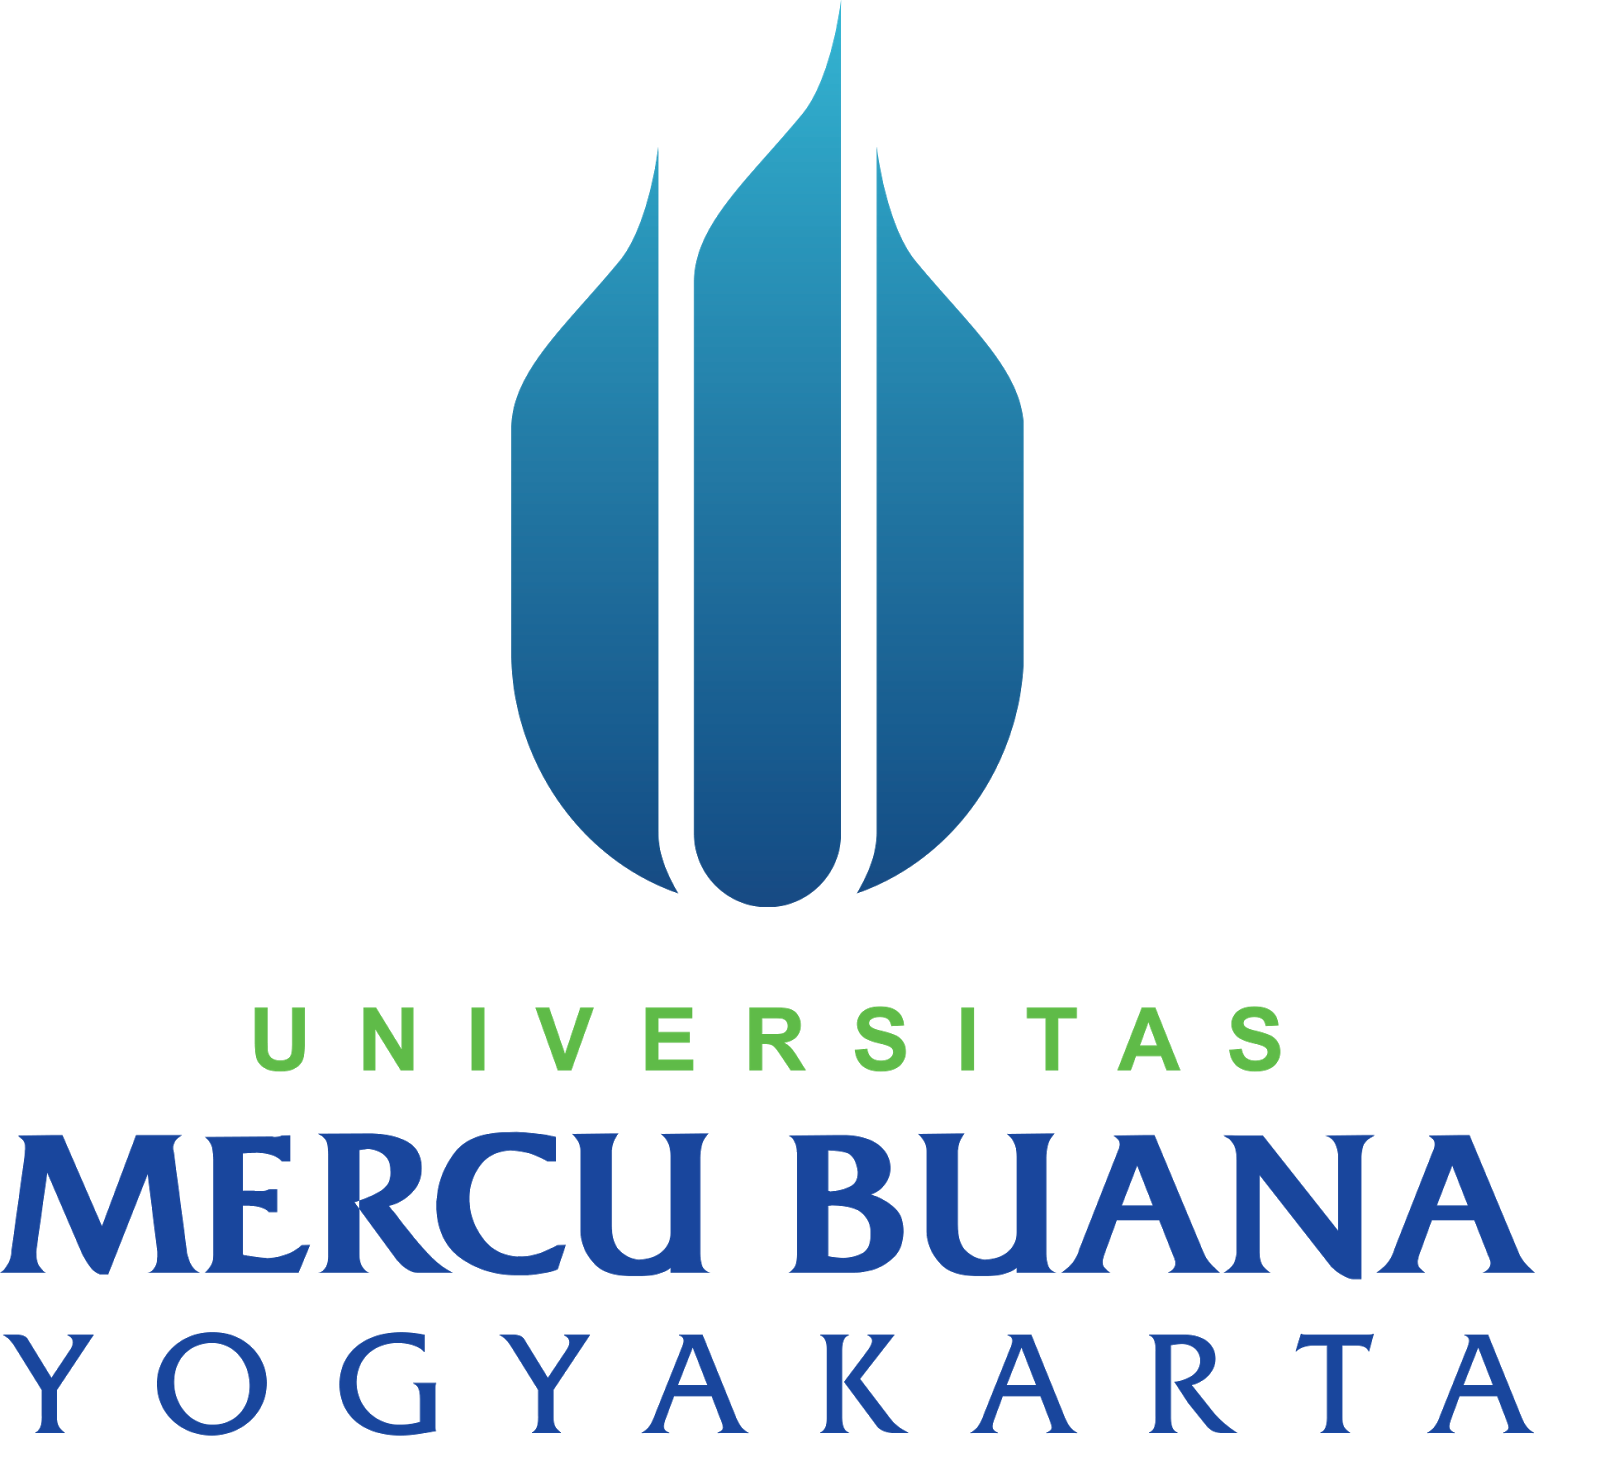 Logo Universitas Mercu Buana Yogyakarta Terbaru - Kado ...